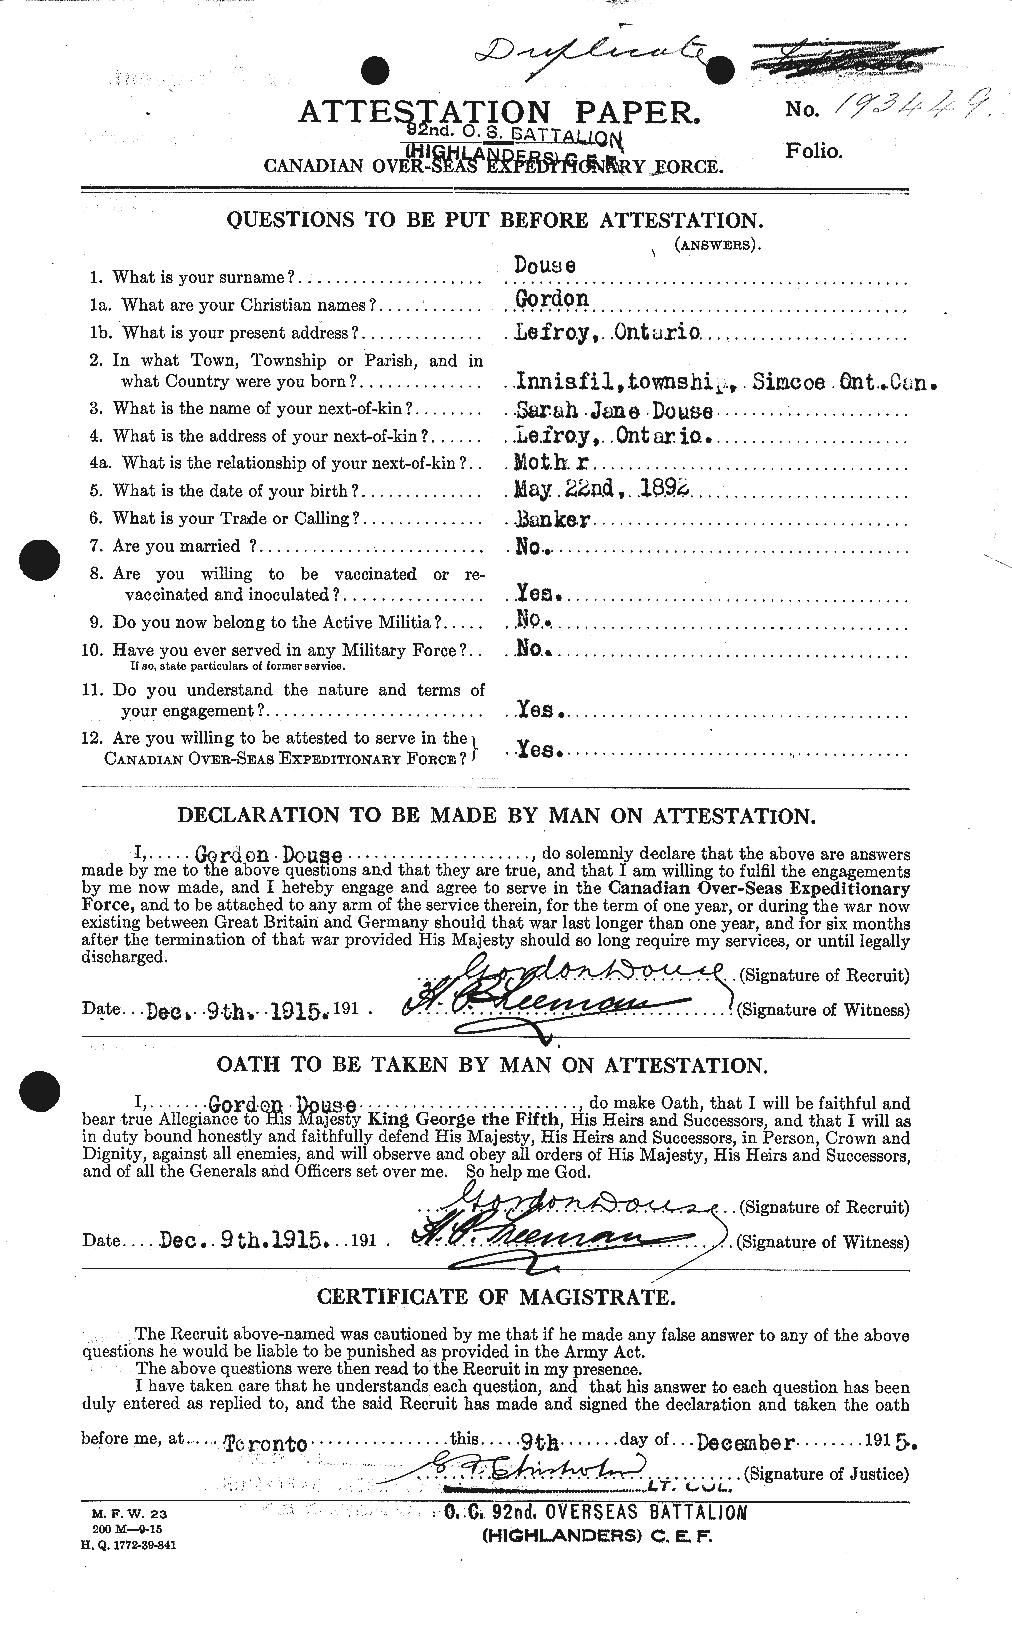 Dossiers du Personnel de la Première Guerre mondiale - CEC 296893a